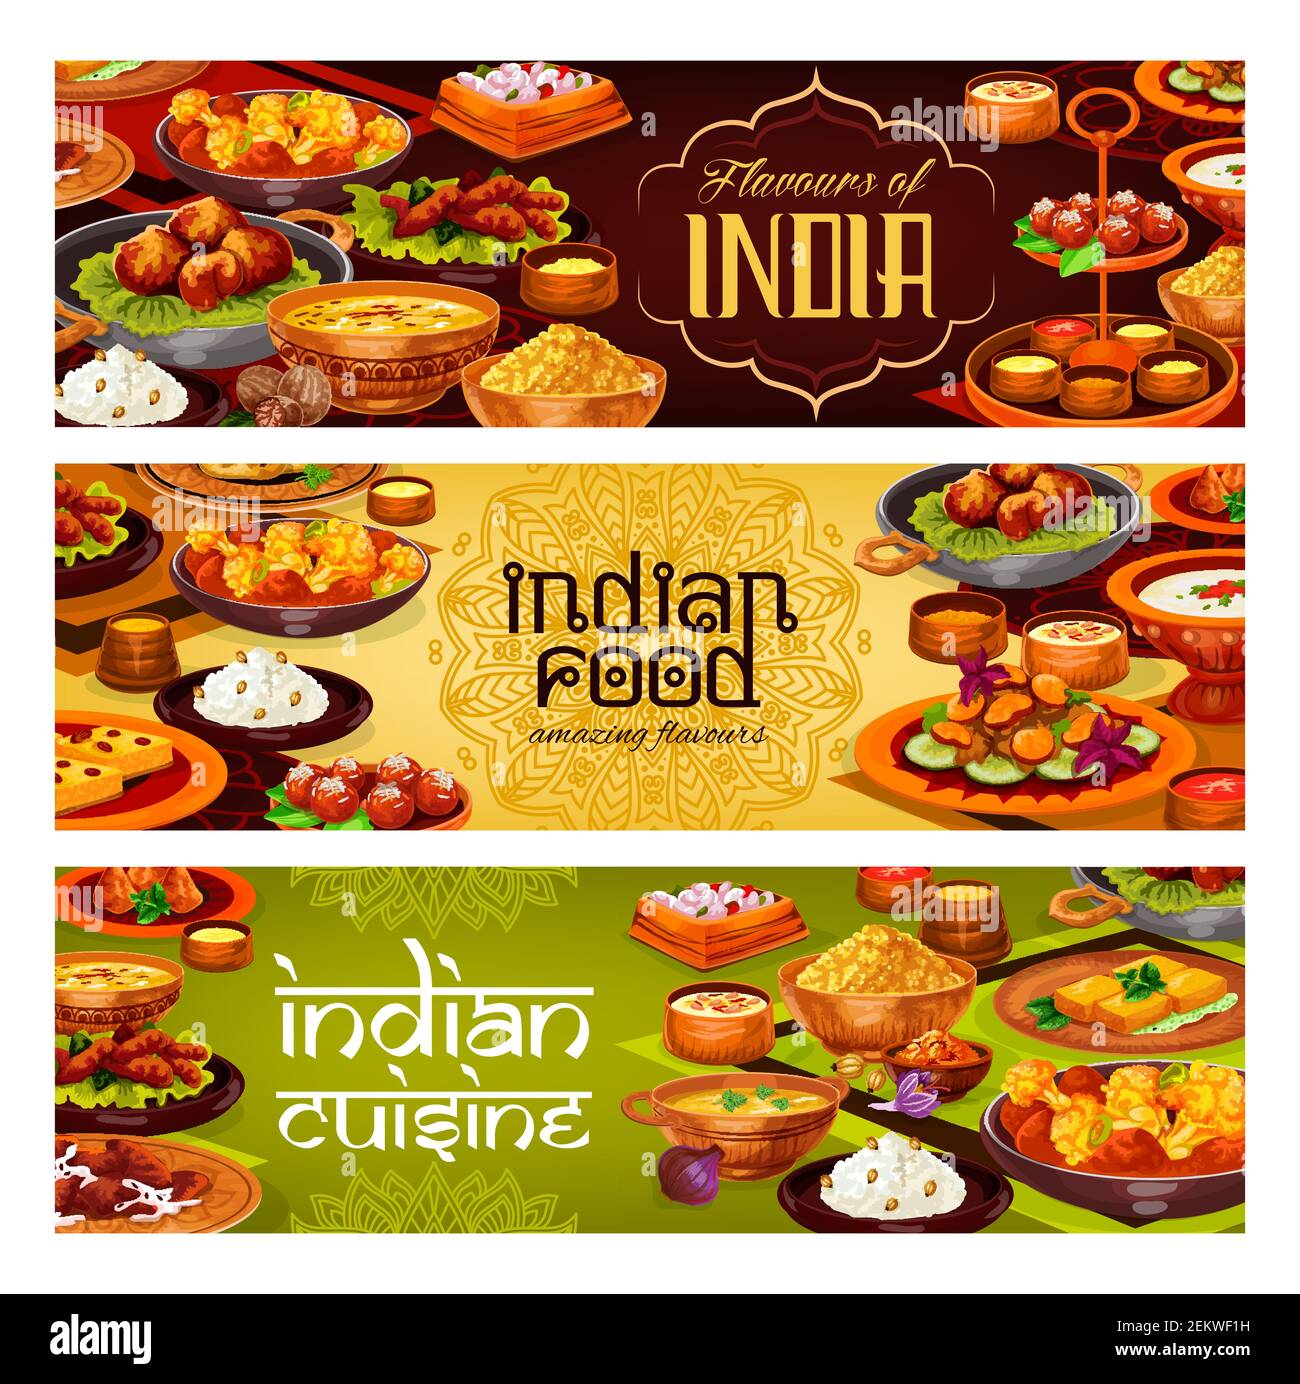 Banderoles vectorielles de cuisine indienne avec curry de viande, riz pilau et ragoût de légumes, samosa de pommes de terre, soupe de fruits de mer et crevettes frites, dessert au lait et semoule Illustration de Vecteur